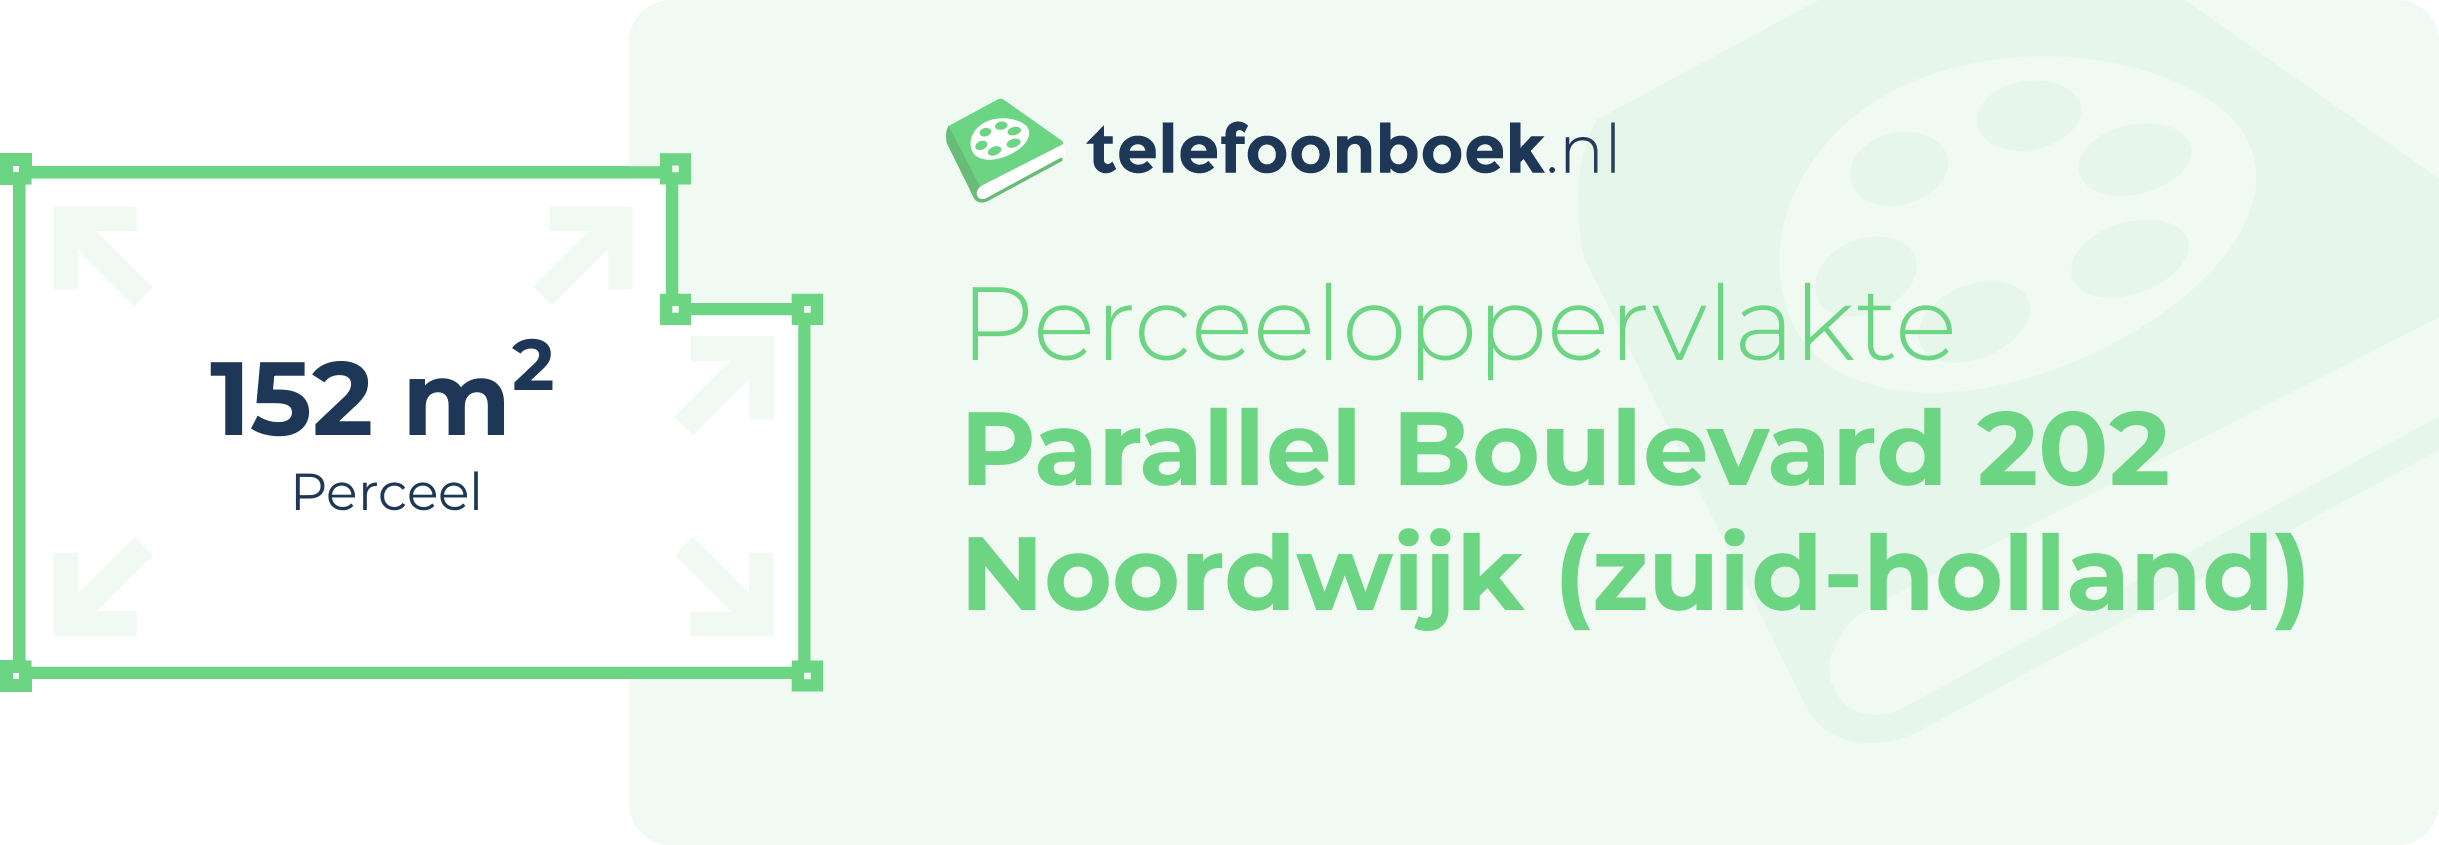 Perceeloppervlakte Parallel Boulevard 202 Noordwijk (Zuid-Holland)